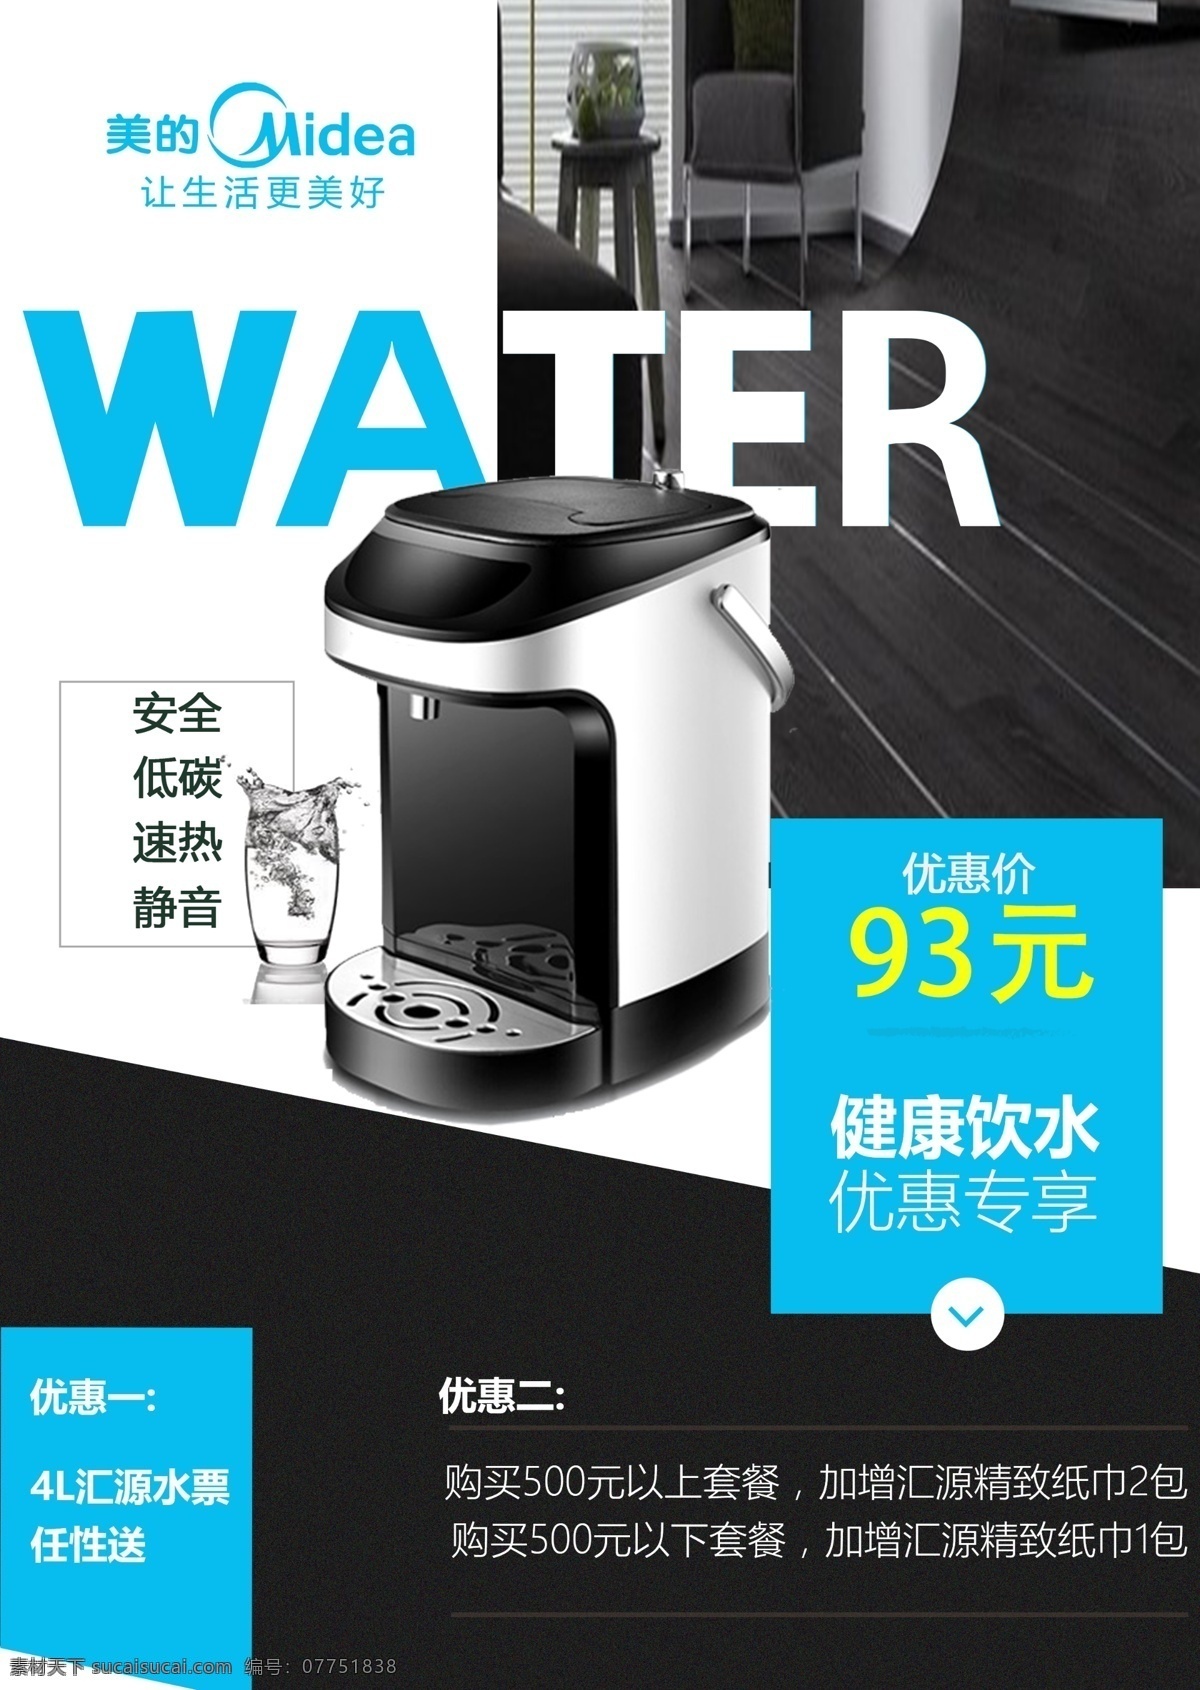 饮水机dm单 海报平面设计 欧美风格 家电 饮水机 简约大气 促销海报